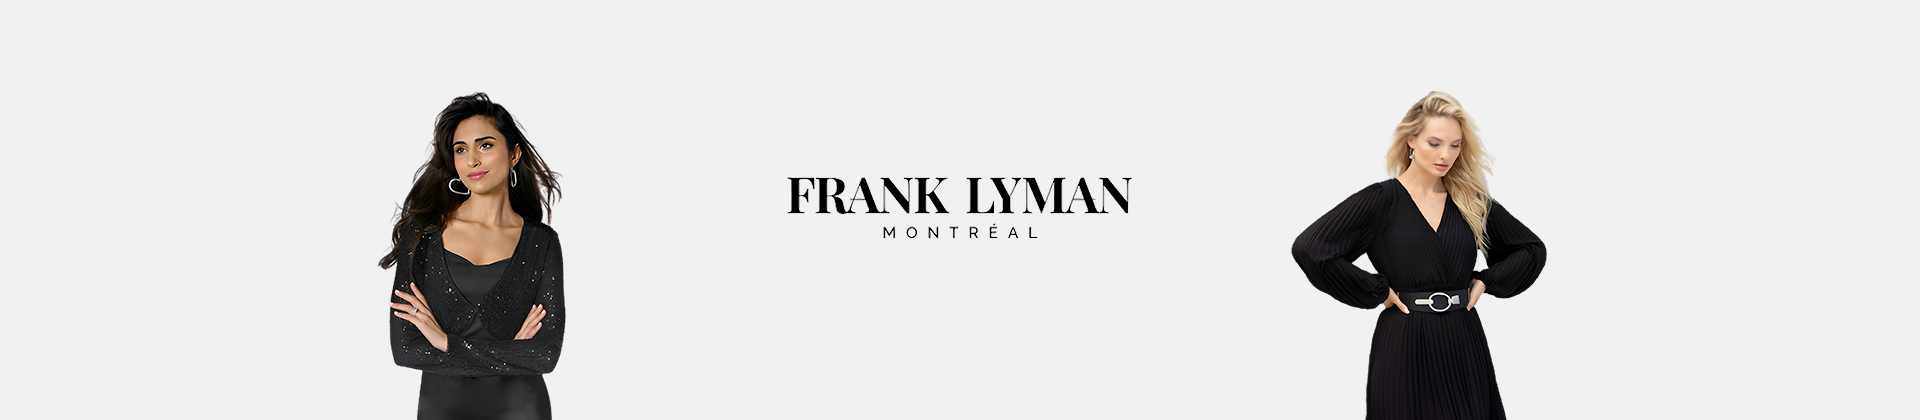 Frank Lyman abbigliamento donna da cerimonia